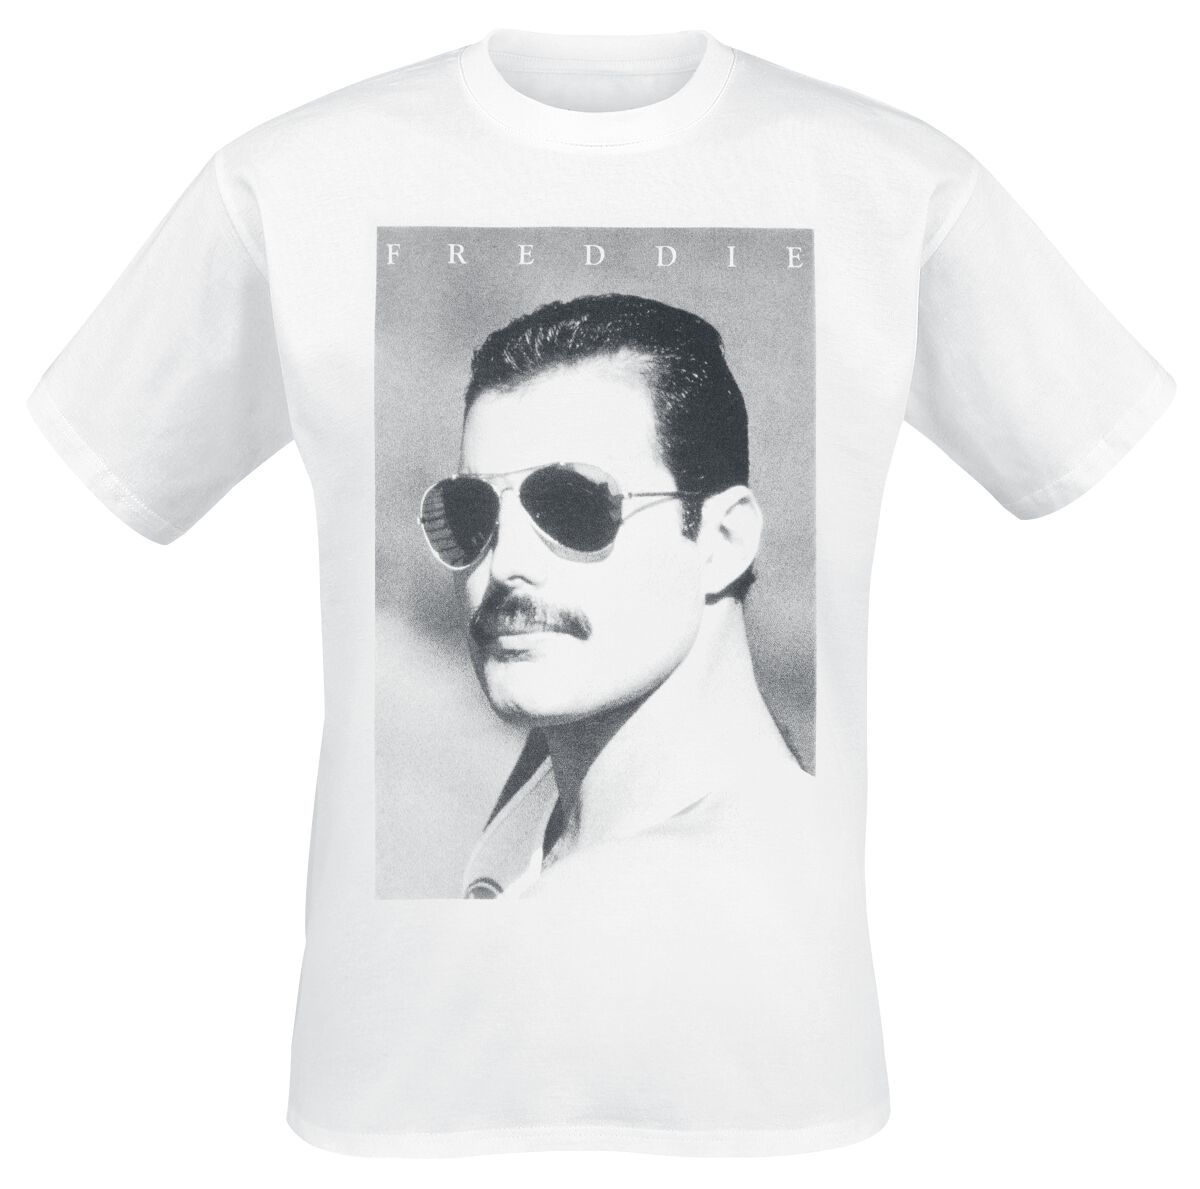 Queen T-Shirt - Freddie Mercury - Sunglasses - S bis XXL - für Männer - Größe M - weiß  - Lizenziertes Merchandise! - M